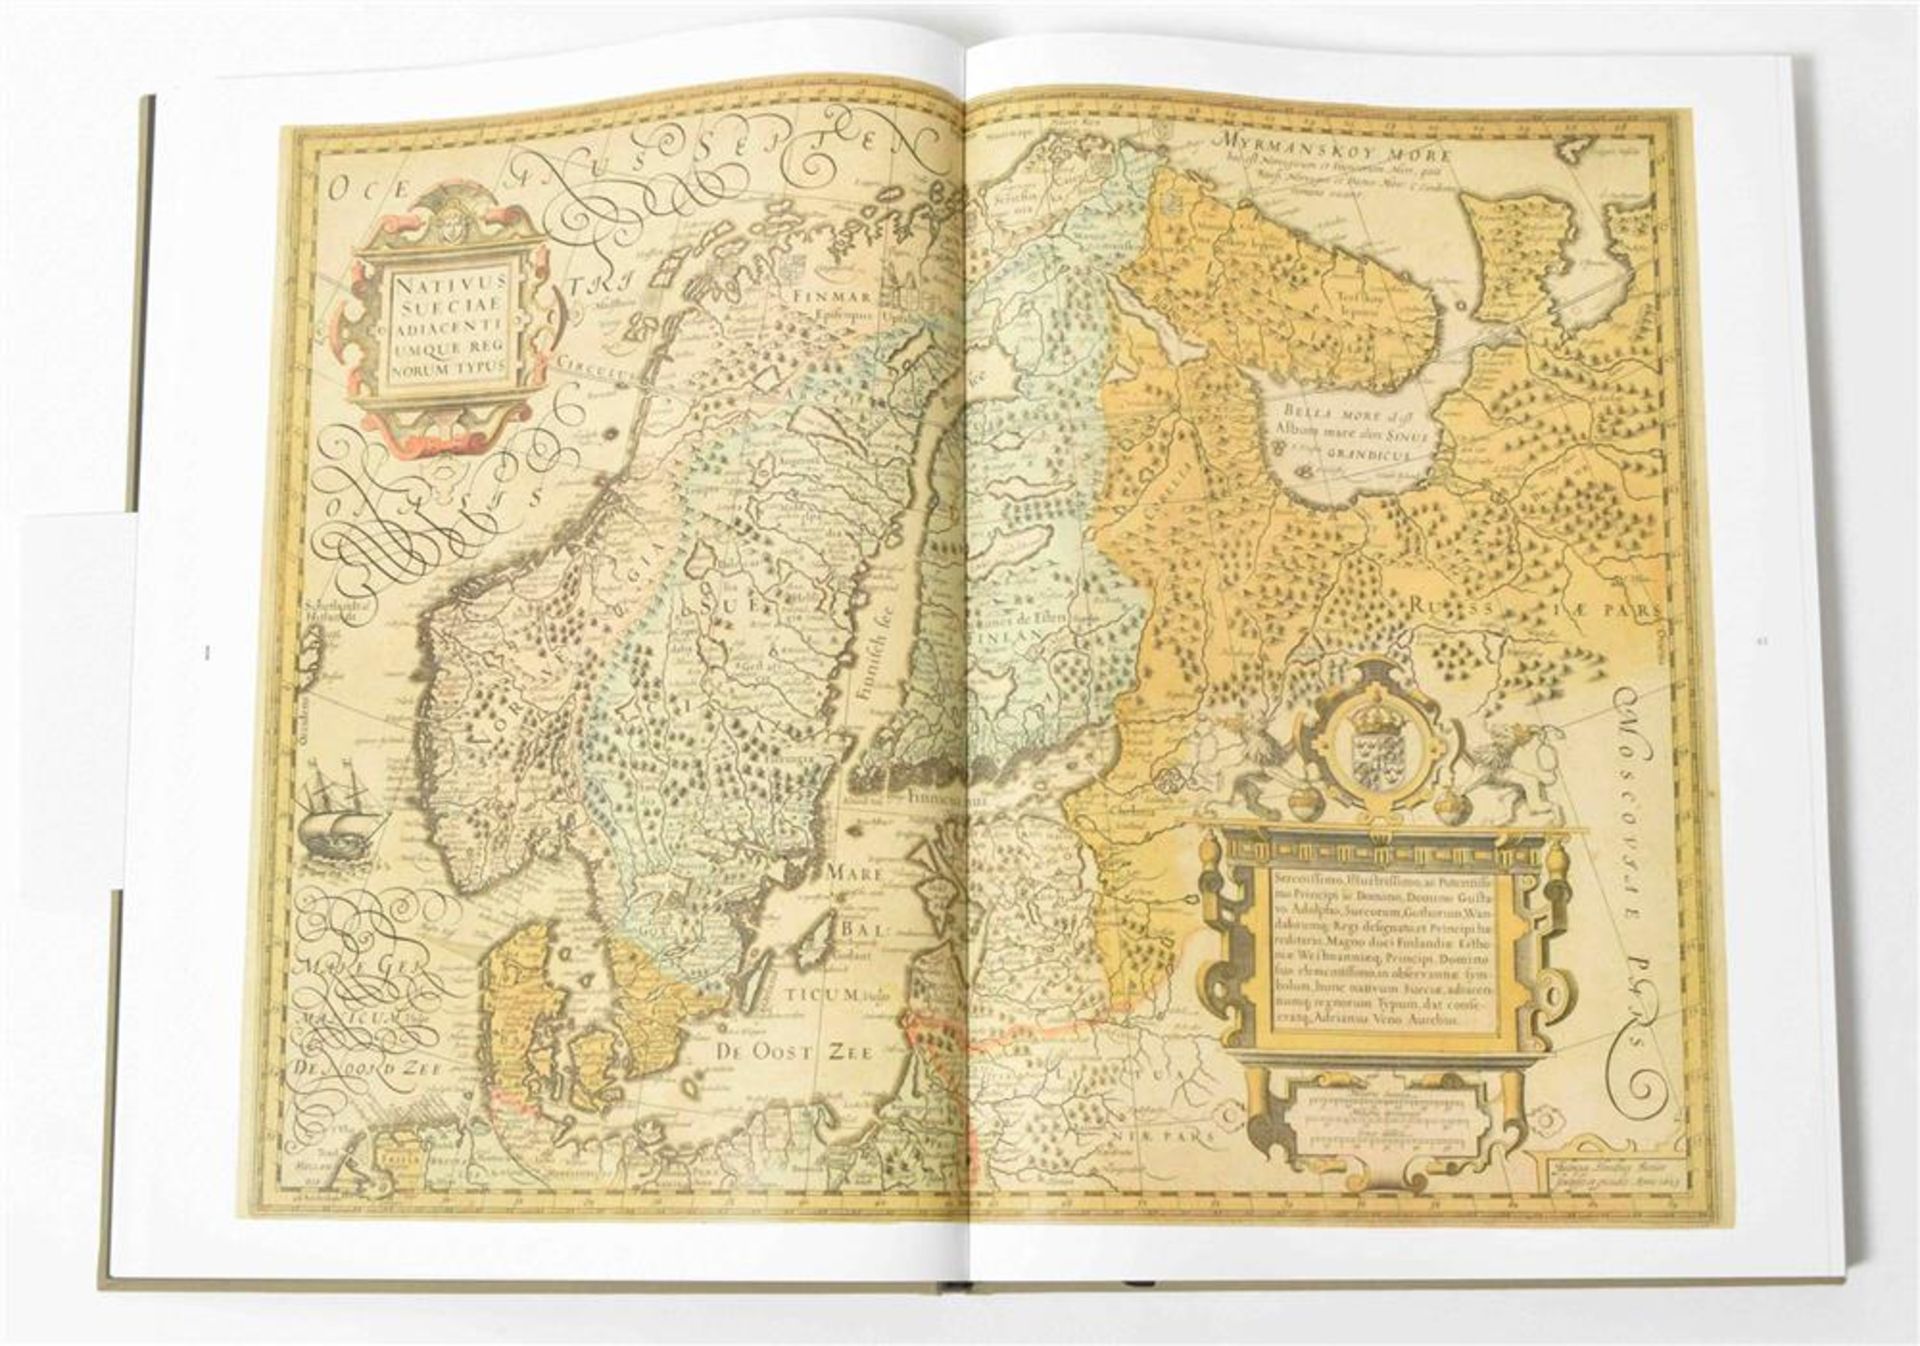 [Facsimiles] Two works: (1) Meer, S. Atlas van de wereld - Image 7 of 10